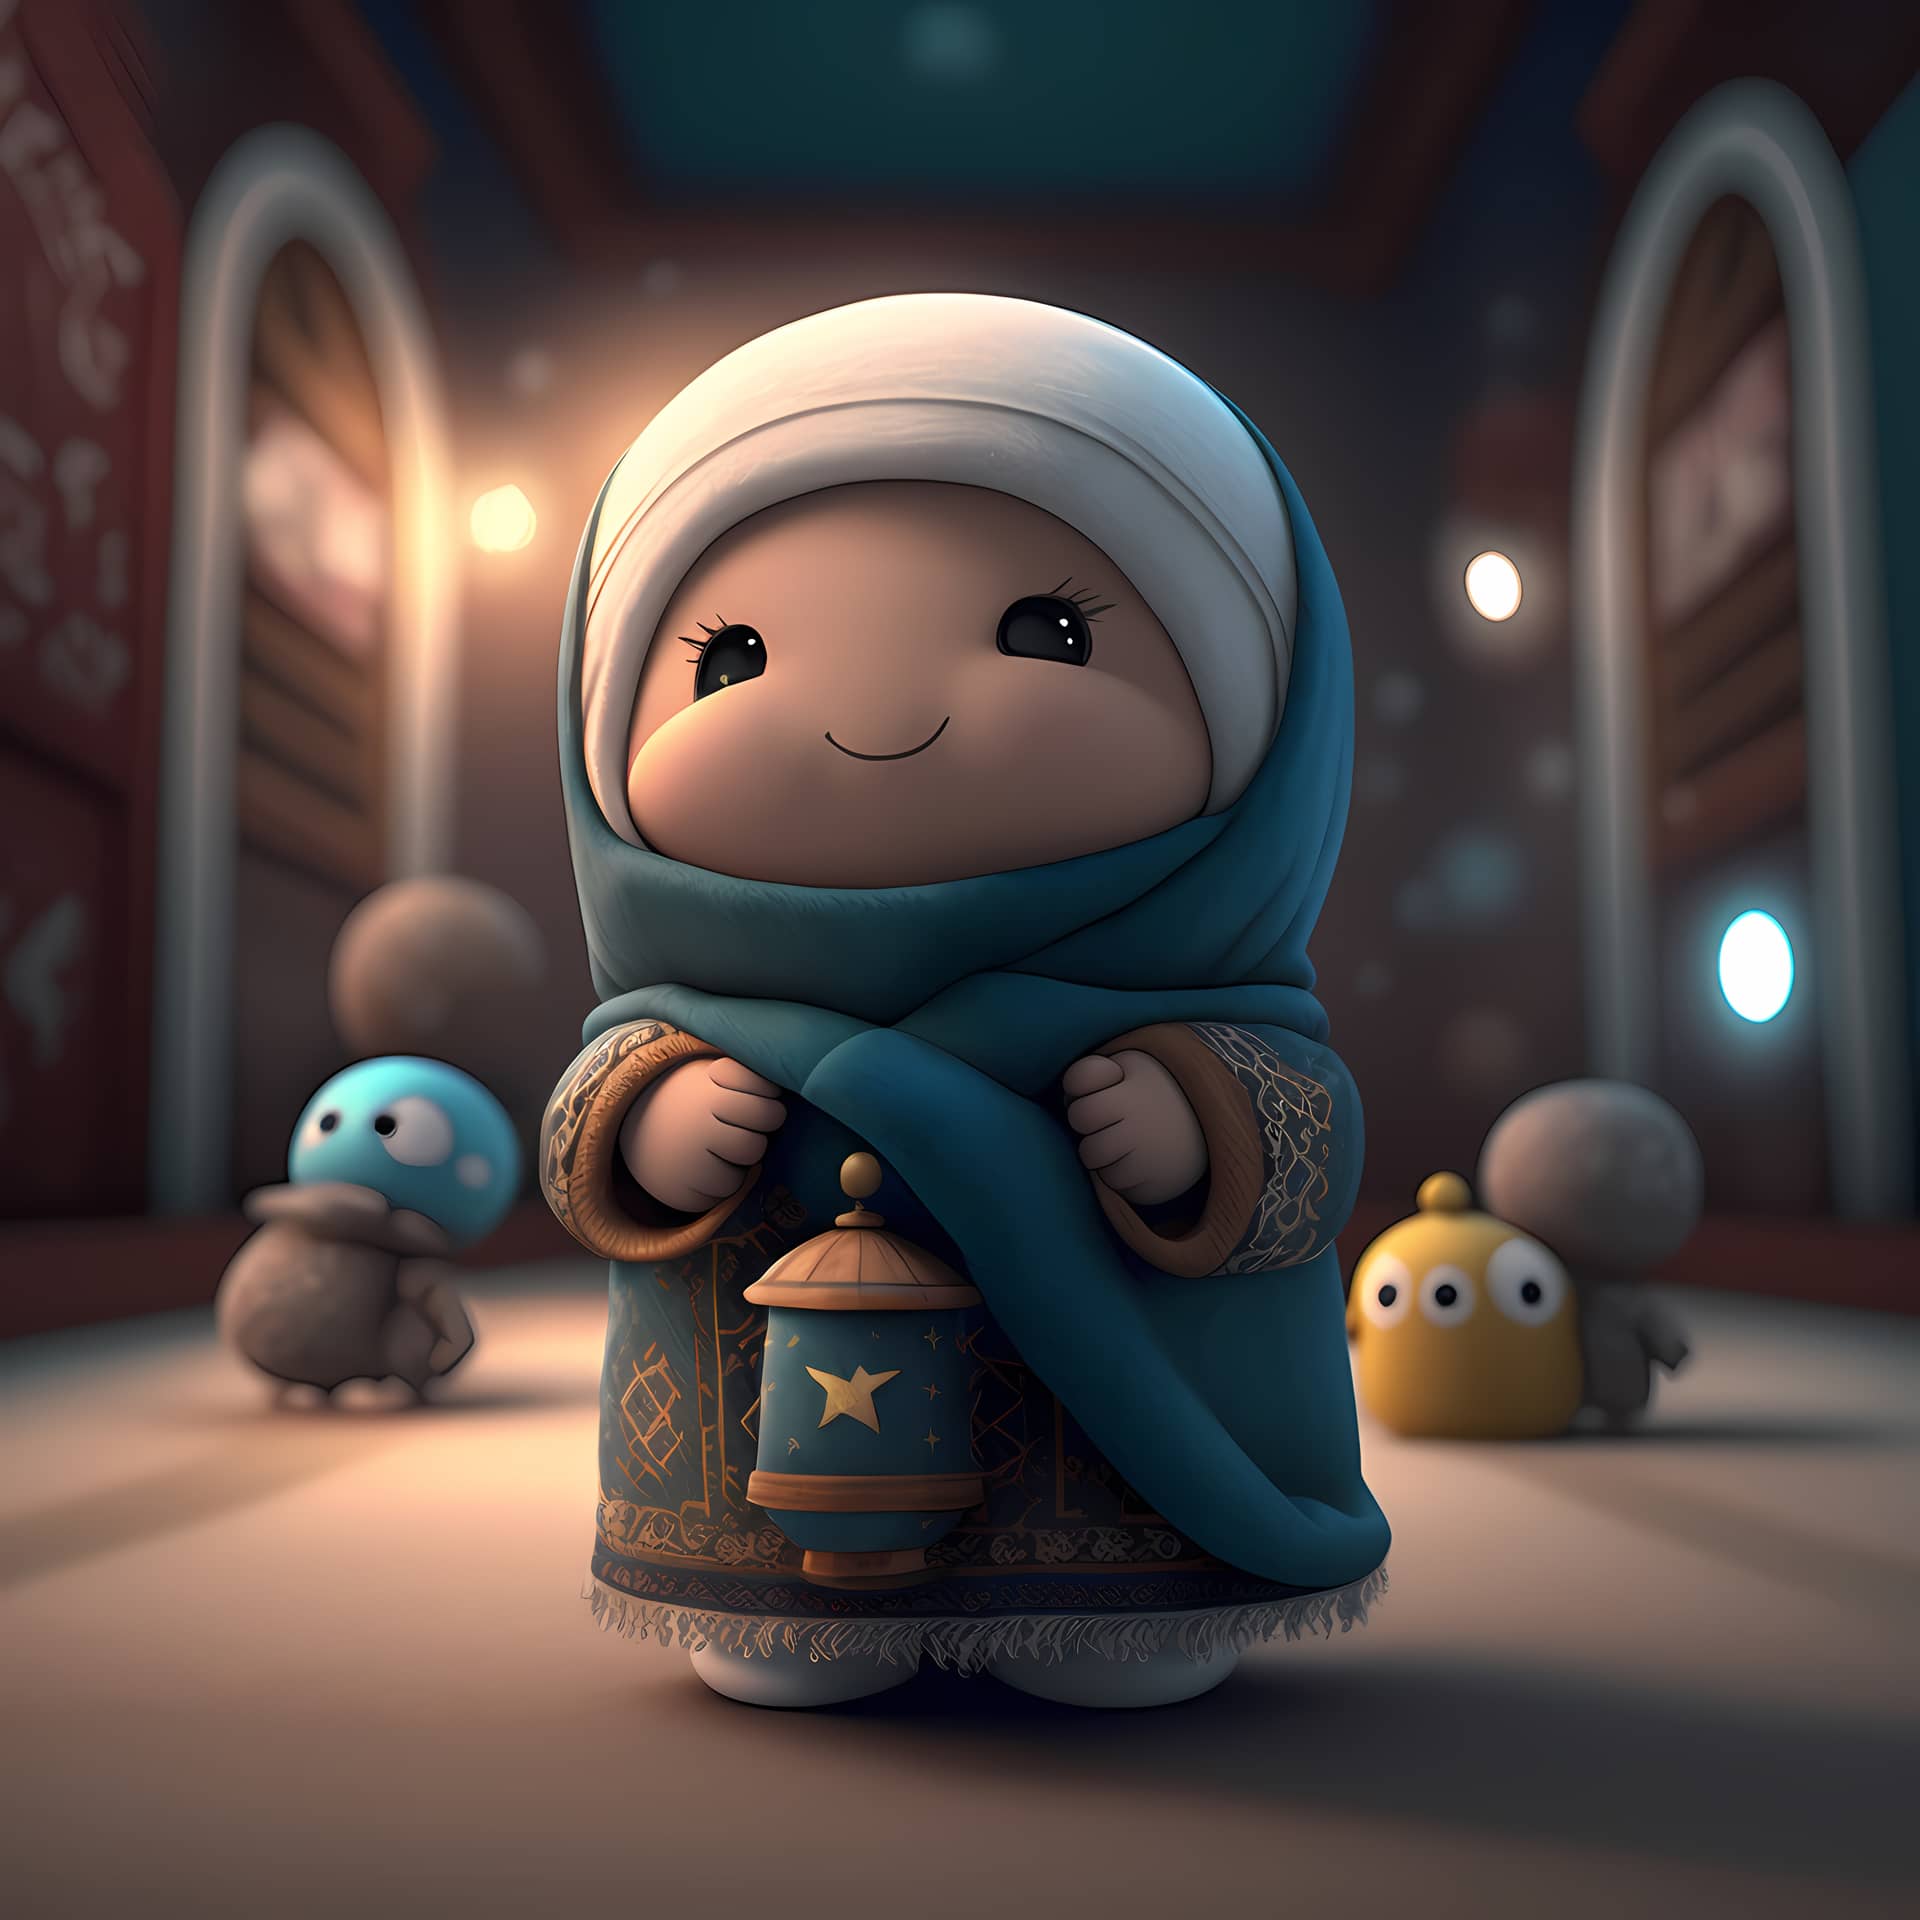 Adorable cute muslim children cartoon character 3d rendering exquisite image